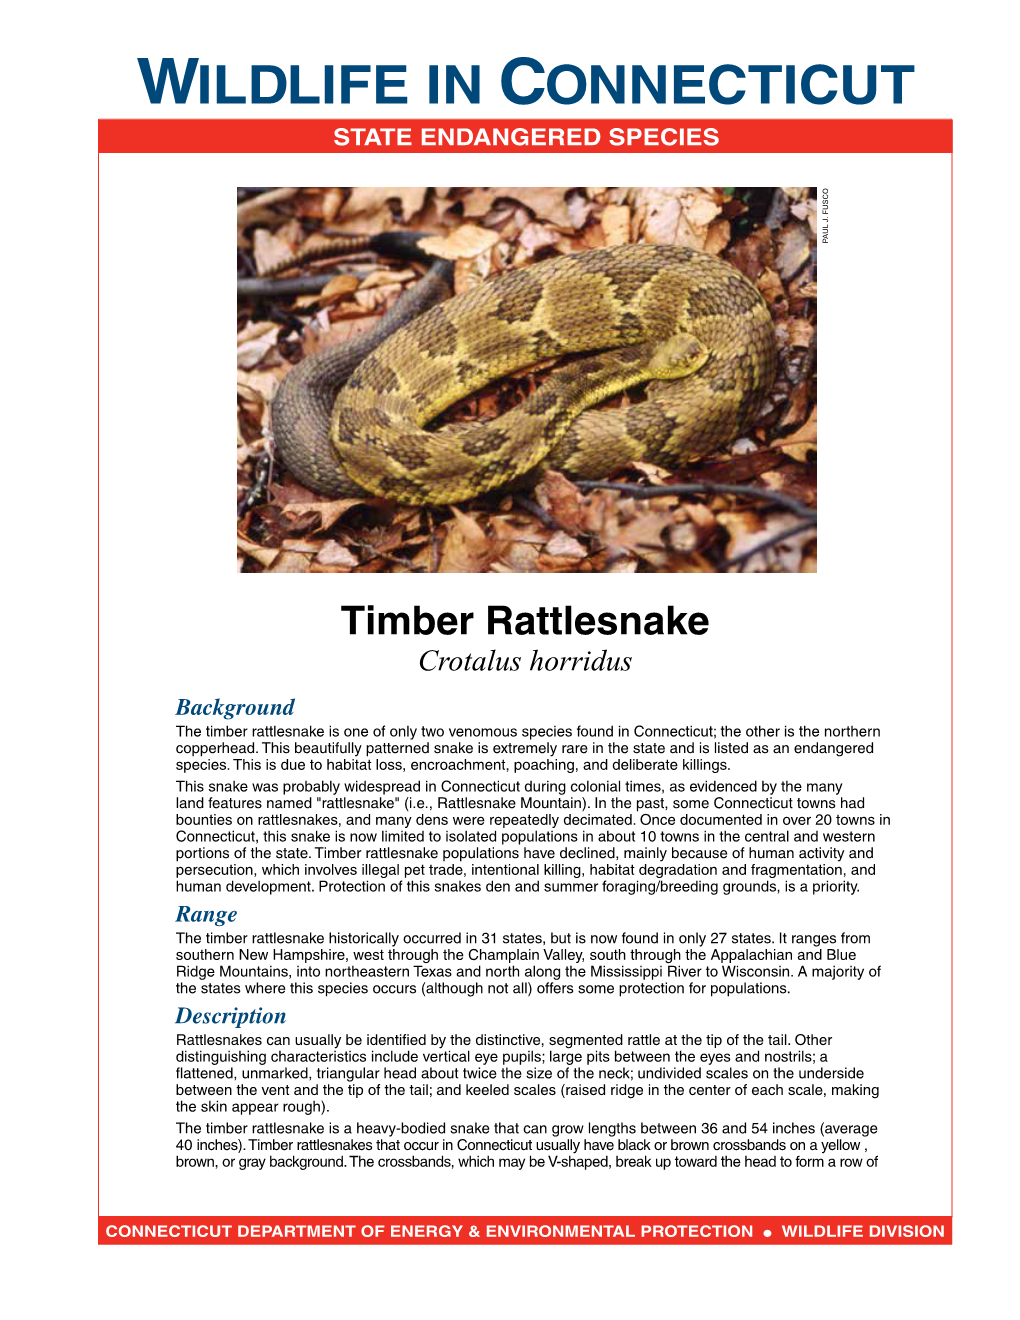 Timber Rattlesnake Fact Sheet